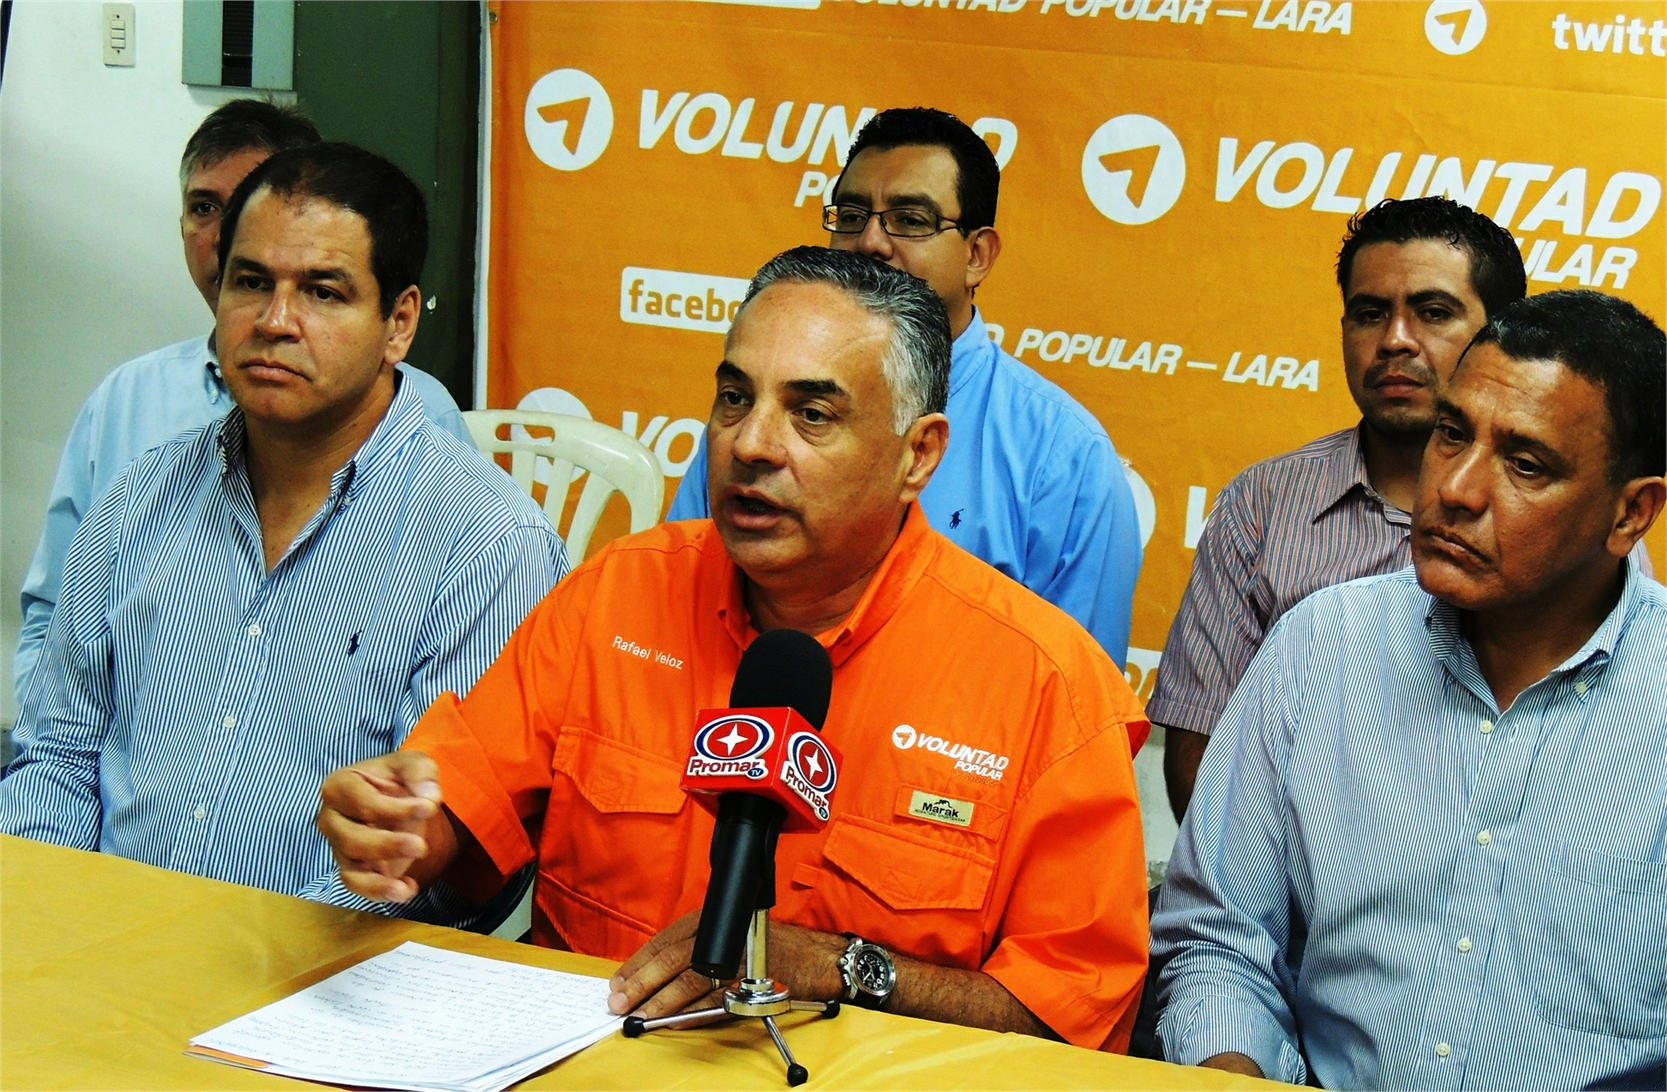 Rafael Veloz: No puede haber avance en materia económica si no hay independencia de los Poderes Públicos